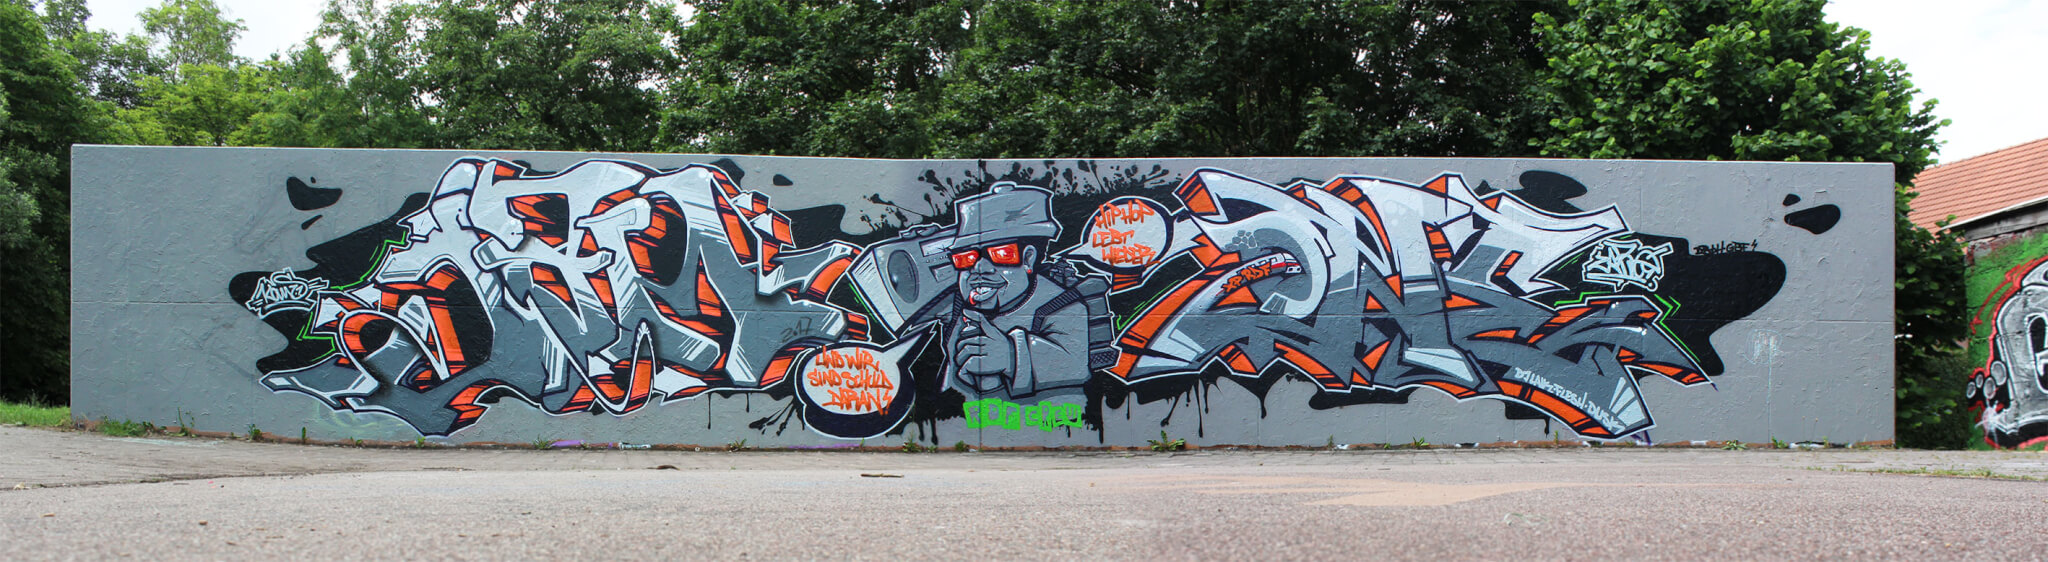 Jam One Graffiti von Kans, Kosta und Zare in Bad Salzungen 2017